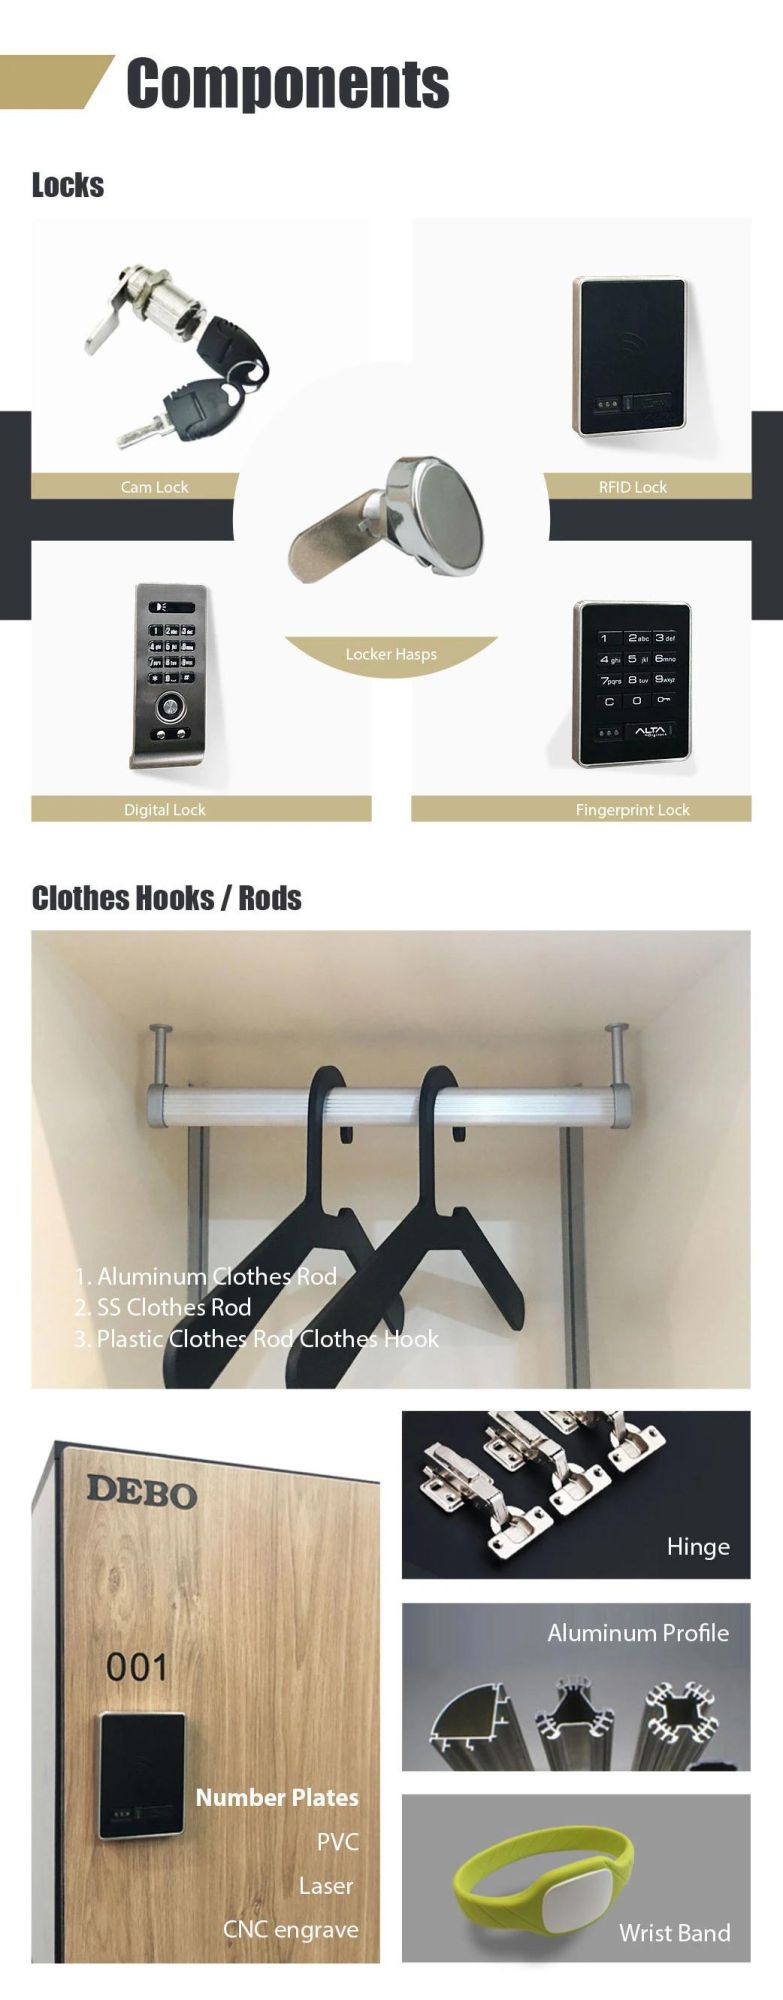 Debo Changing Room HPL Lockers / Phenolic Locker / Cdf Locker/ Aluminum Fixed Locker